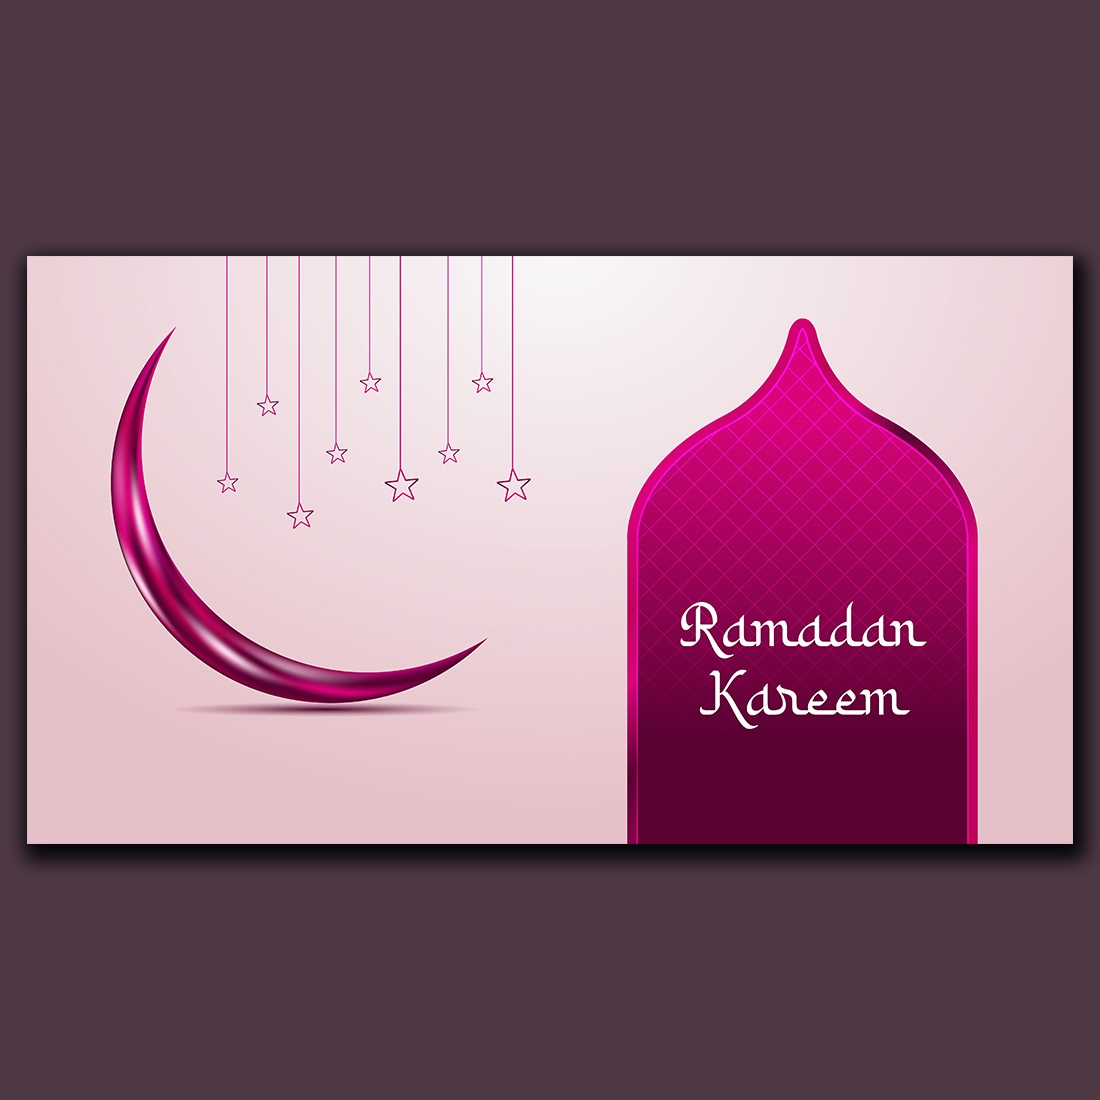 Colorful Ramadan Kareem greetings banner design preview image.